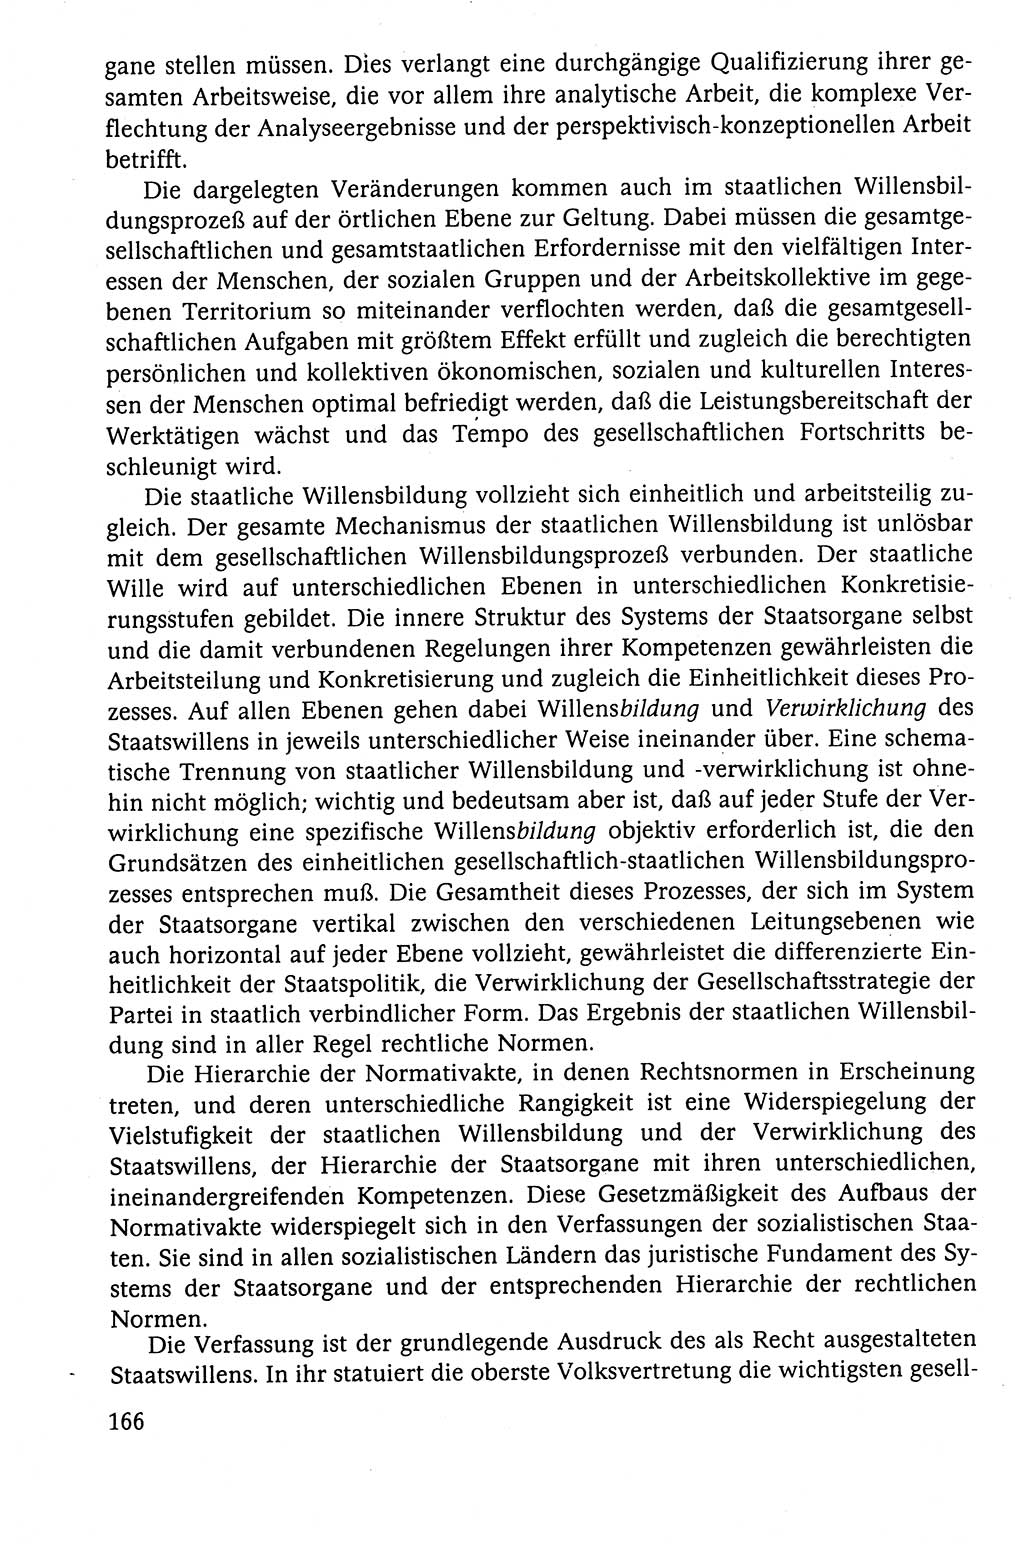 Der Staat im politischen System der DDR (Deutsche Demokratische Republik) 1986, Seite 166 (St. pol. Sys. DDR 1986, S. 166)